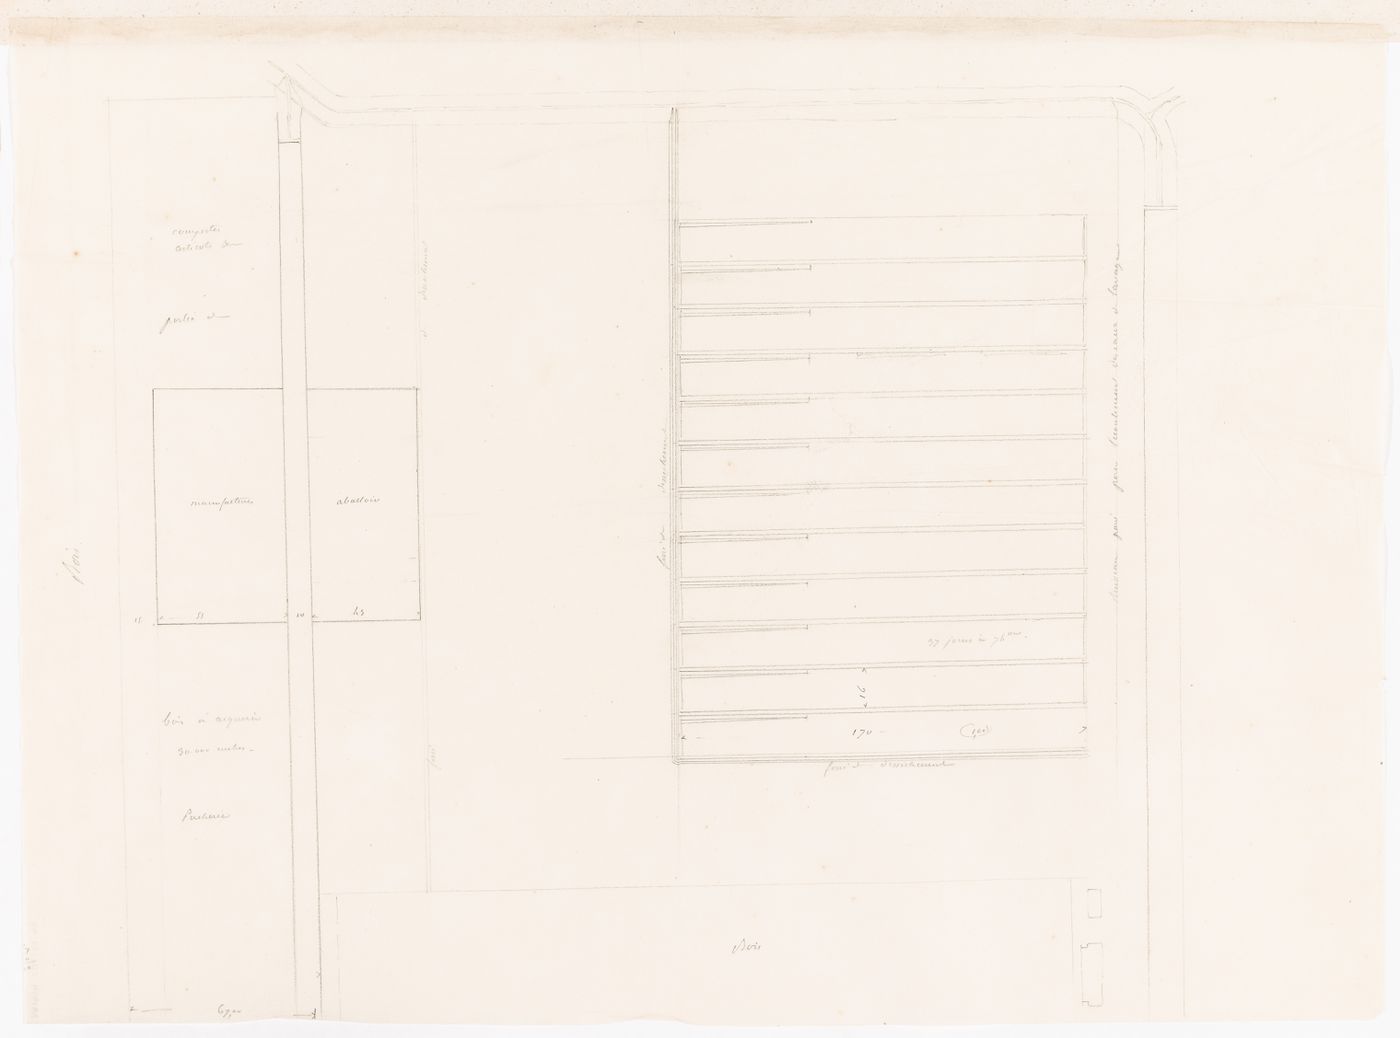 Sketch block plan including a "porcherie" for either Clos d'équarrissage or the horse slaughterhouse, La Villette